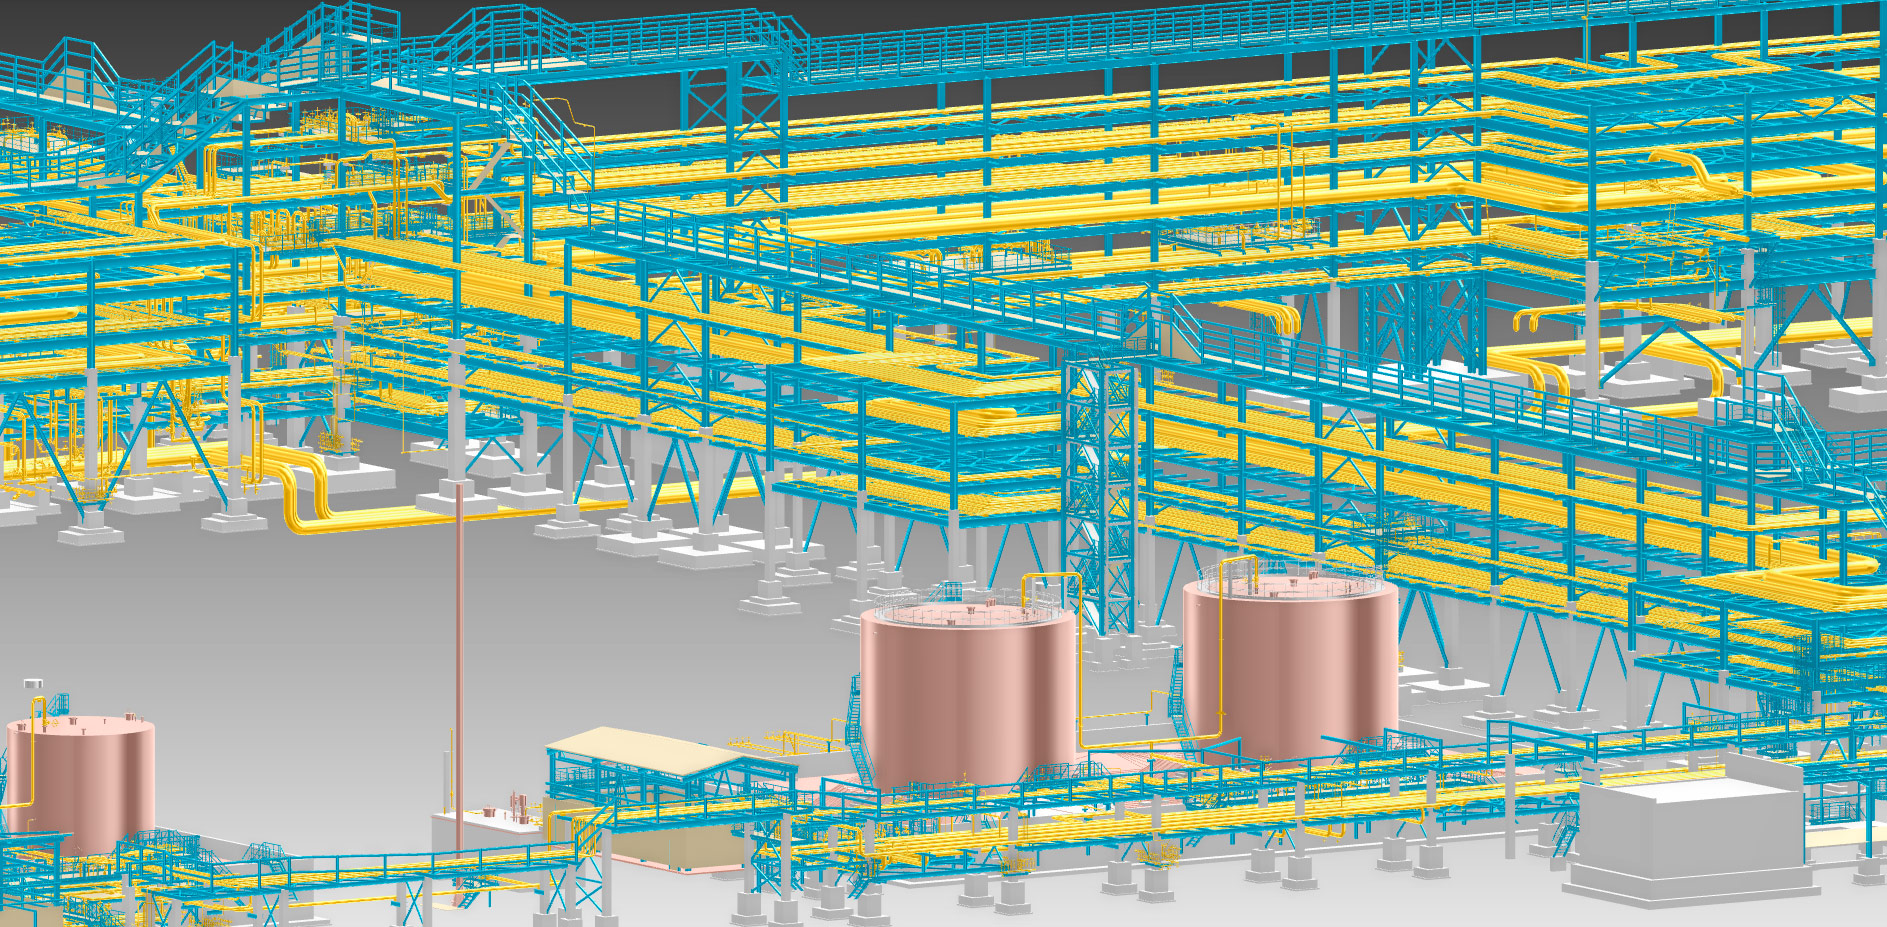 Фрагмент 3D-модели объектов общезаводского хозяйства 
«Комплекса переработки нефтяных остатков»